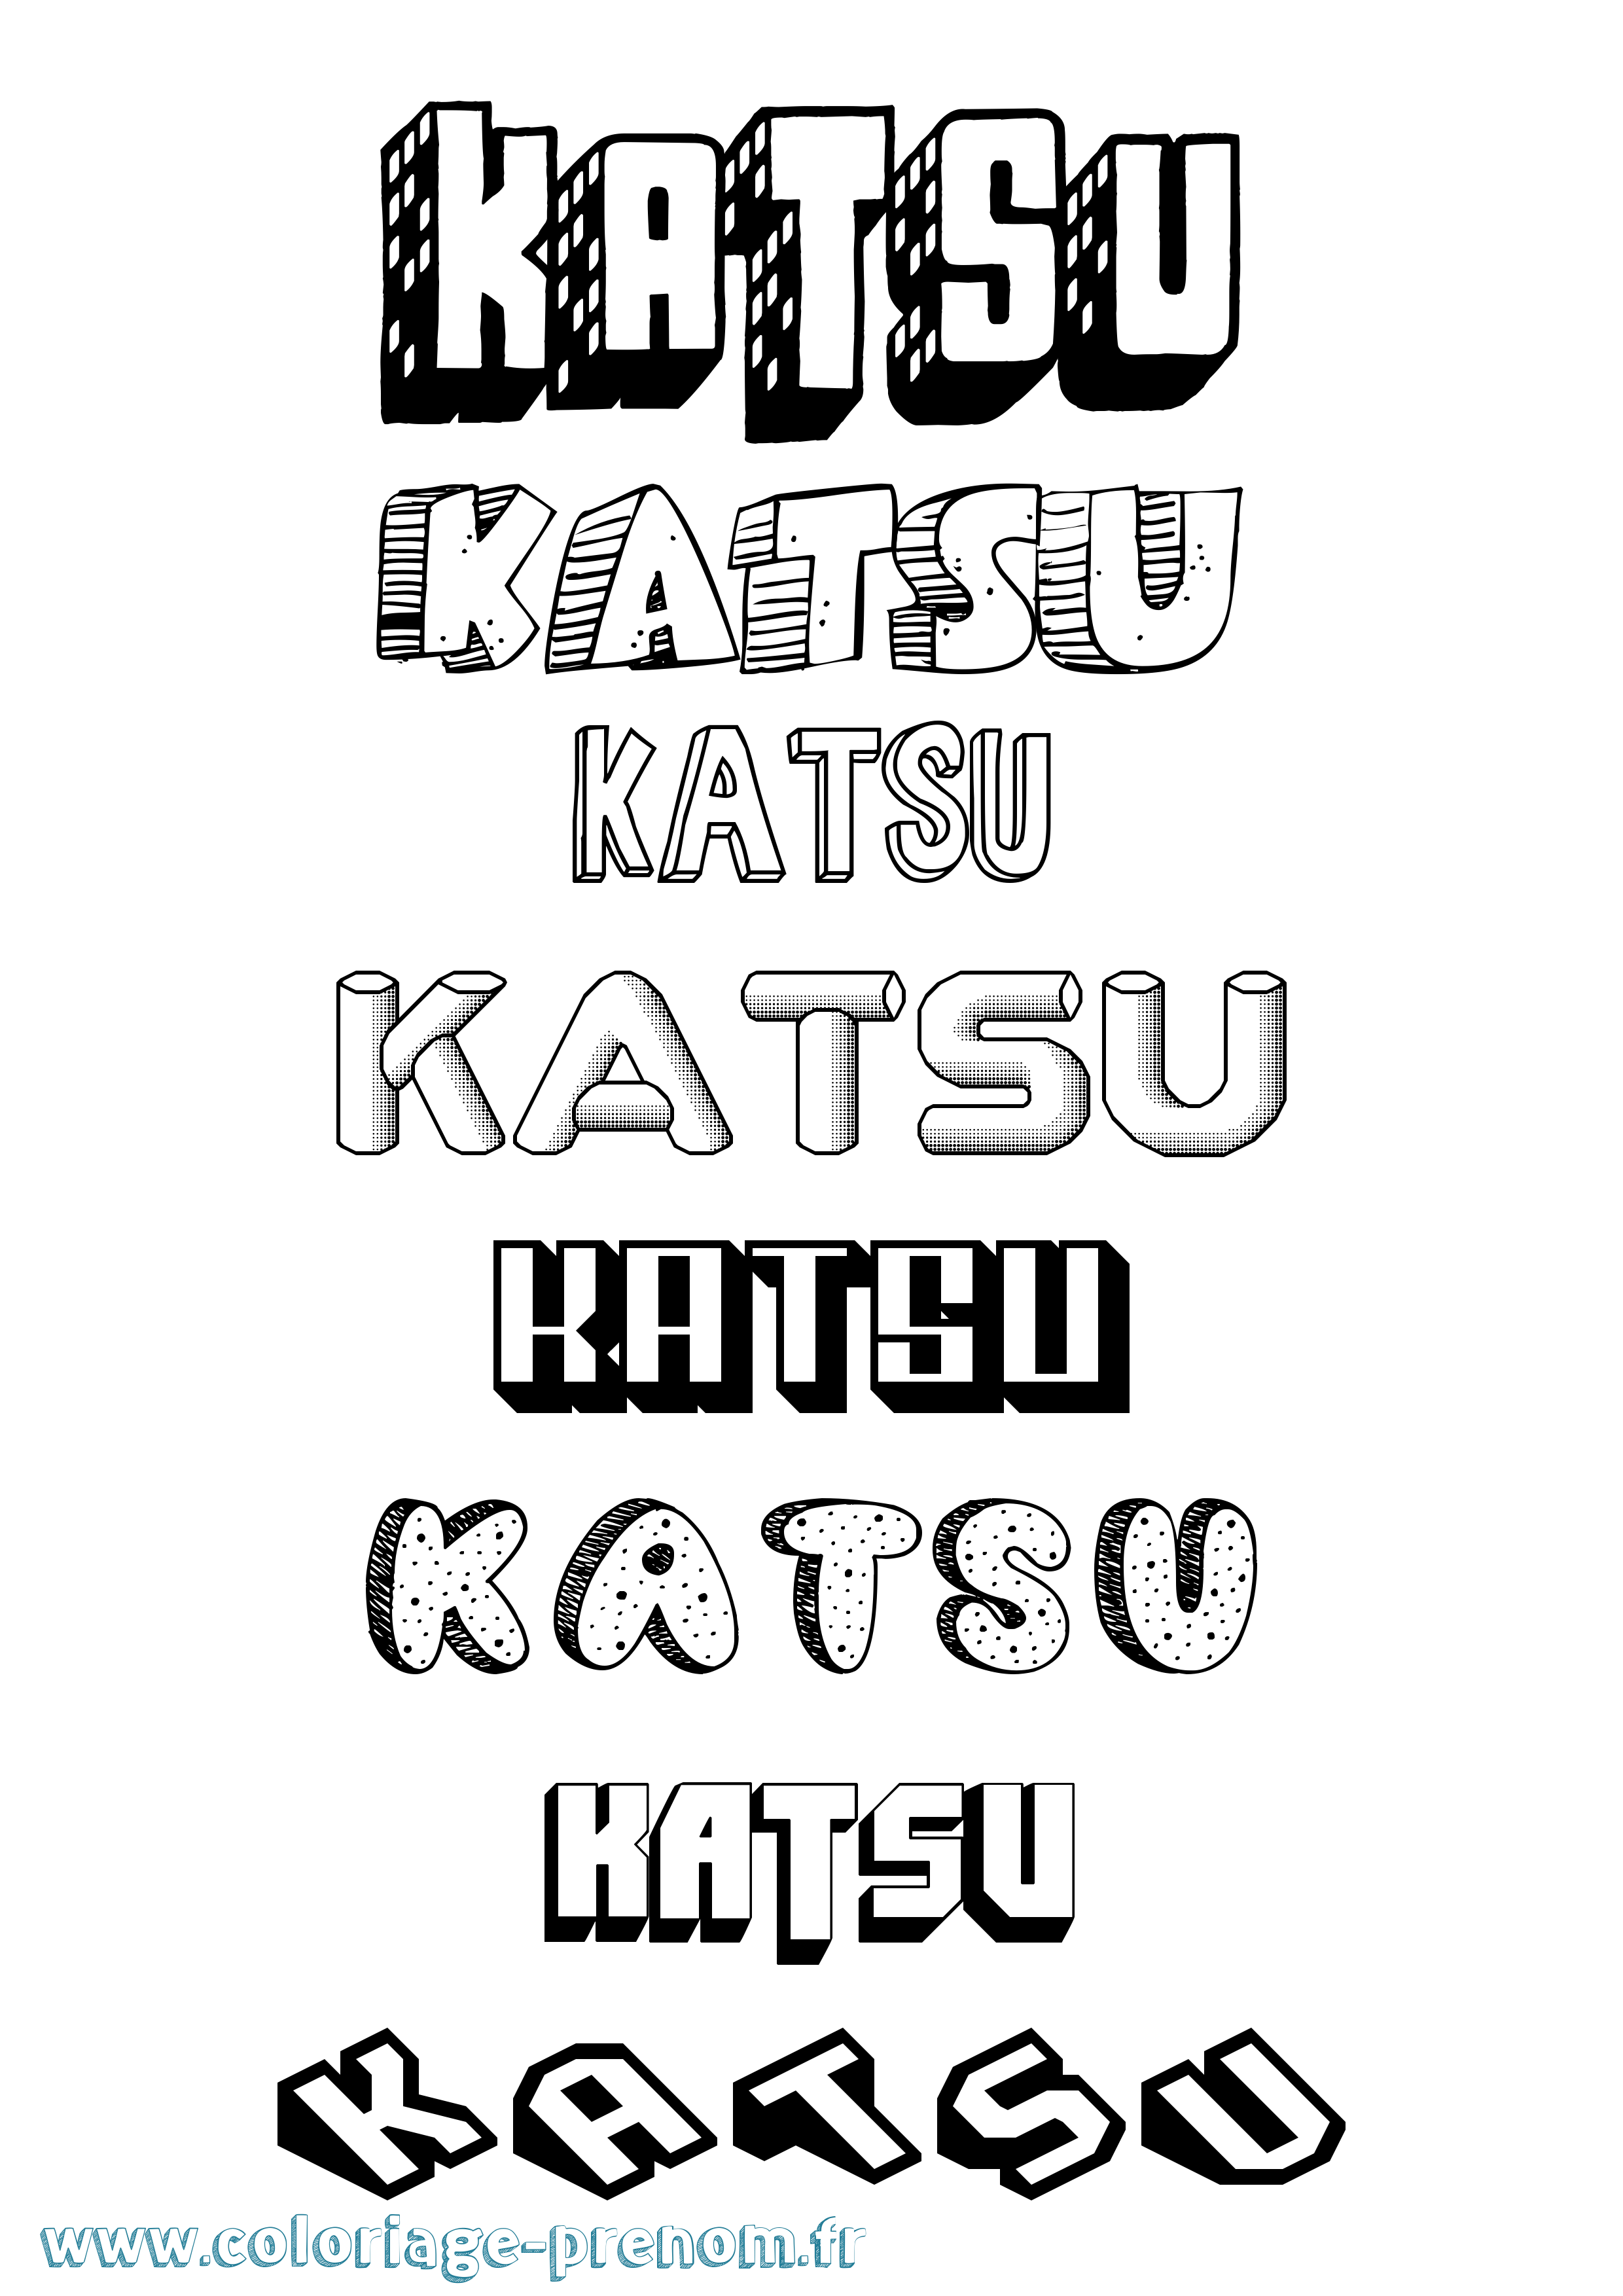 Coloriage prénom Katsu Effet 3D